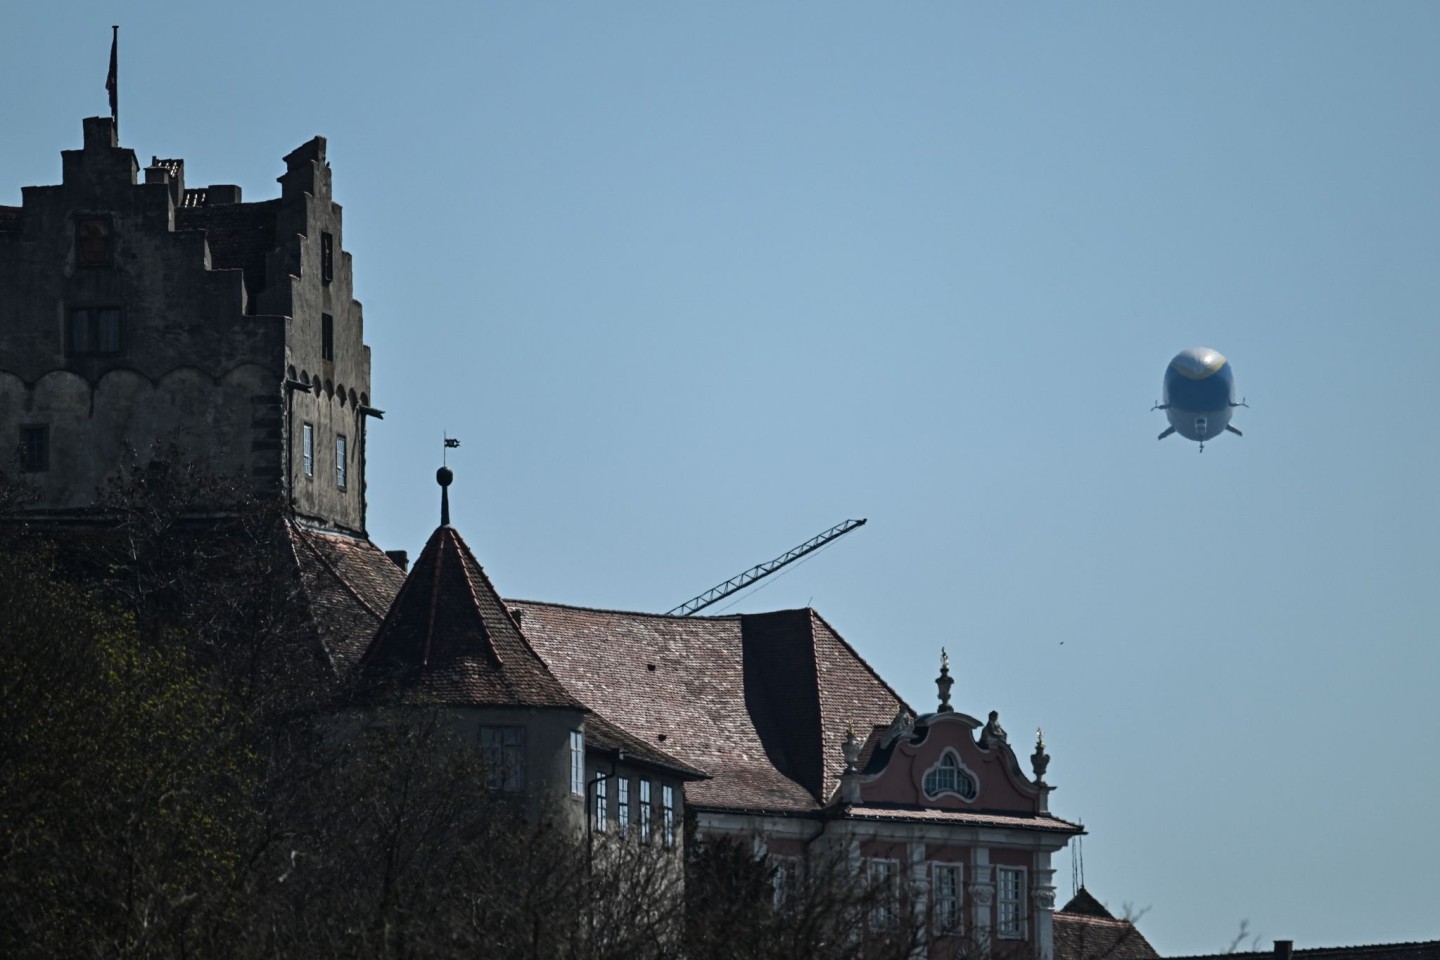 Der Zeppelin NT (Neue Technologie) fliegt an der Burg Meersburg am Bodensee entlang.